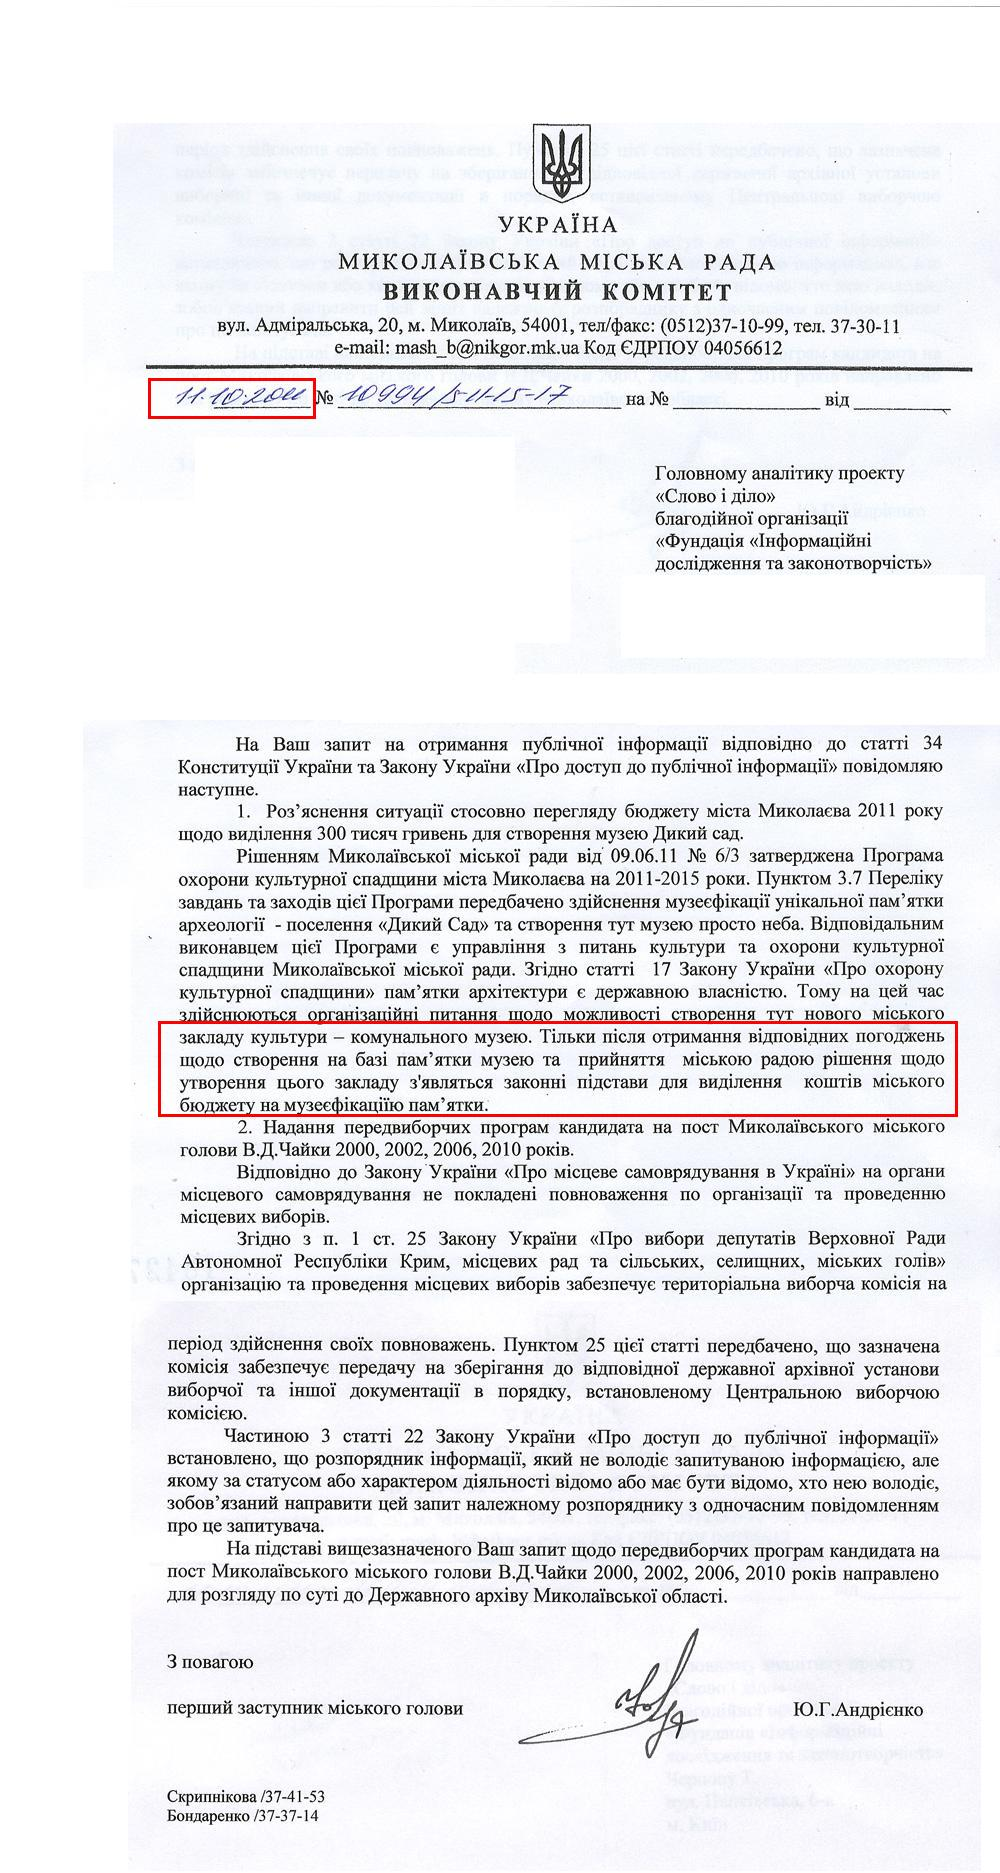 Письмо первого заместителя Городского головы Николаева Ю.Г.Андриенка